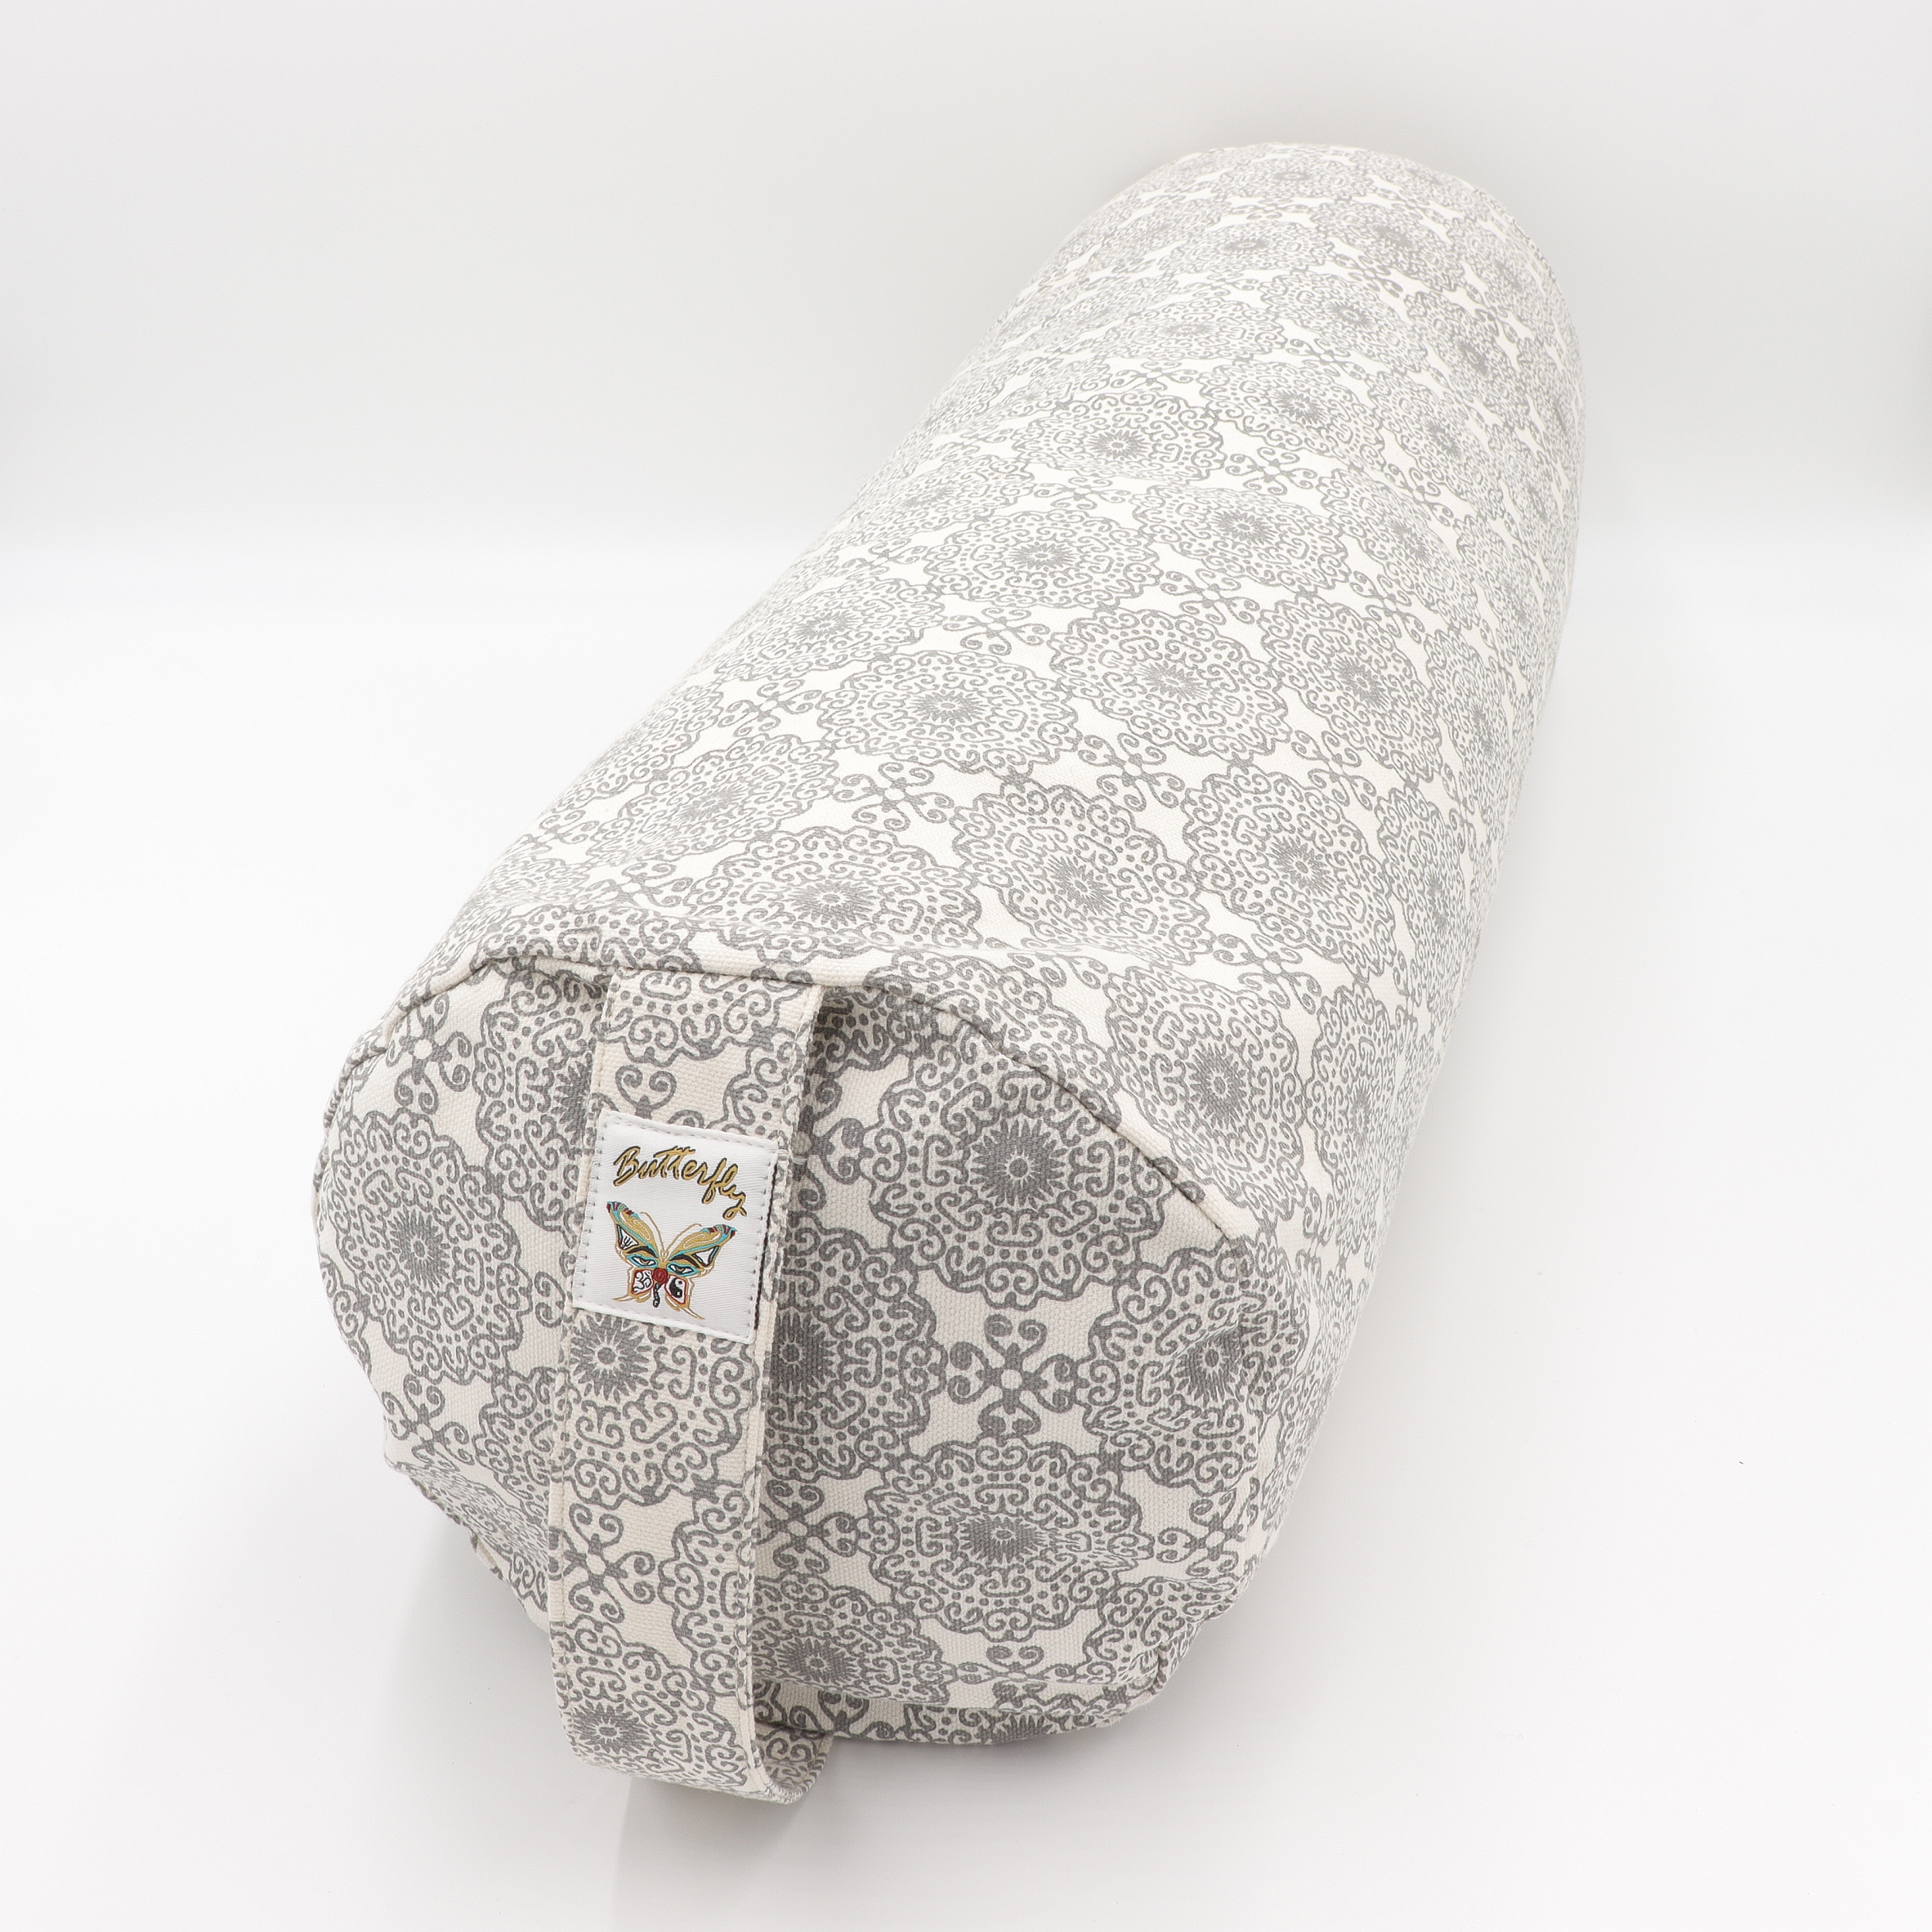 Meditationskissen Zylinder - Blockdruck Weiß & Grau - bedrucktes Sitzkissen als Bolster mit Trageschlaufe - Bezug 100% Baumwolle - Füllung 100% Buchweizenschalen